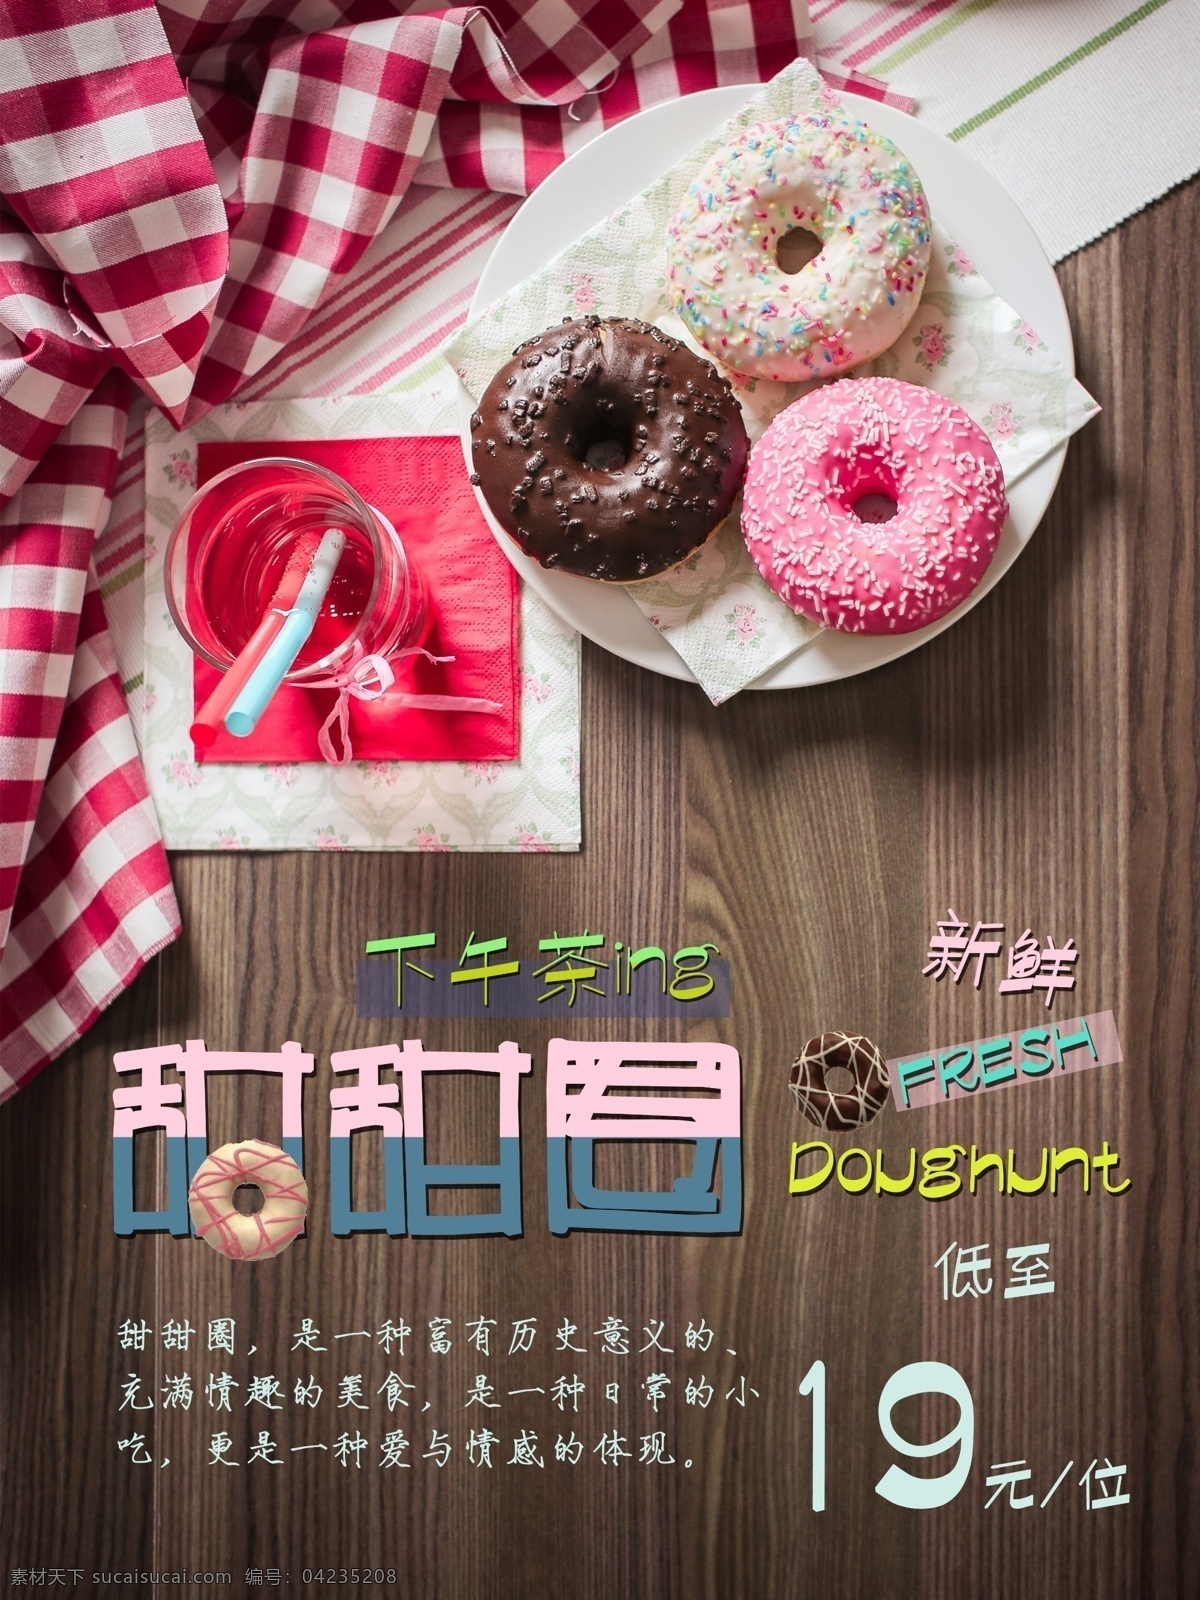 烘焙 海报 蛋糕 店 促销海报 下午茶 折扣 新品 木纹背景 甜甜圈 粉色